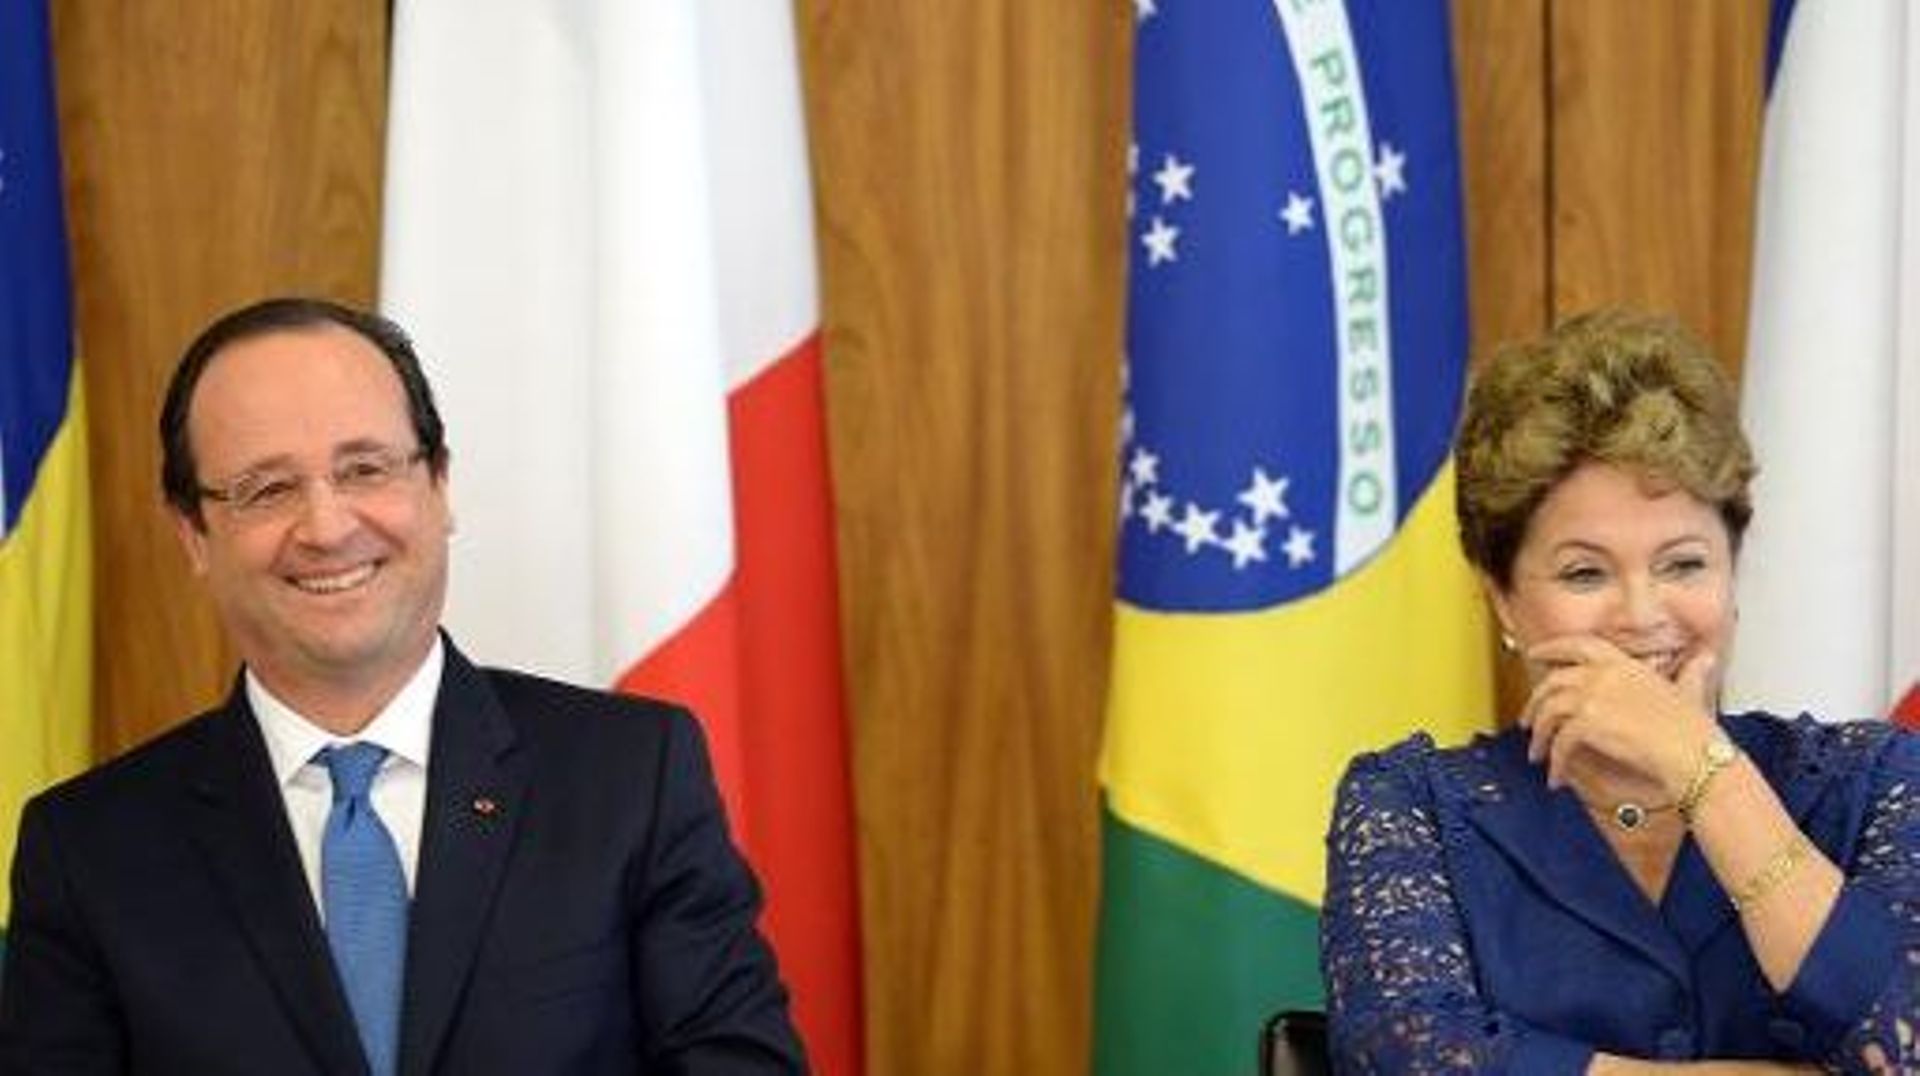 François Hollande et la présidente brésilienne Dilma Rousseff à Brasilia, le 12 décembre 2012 